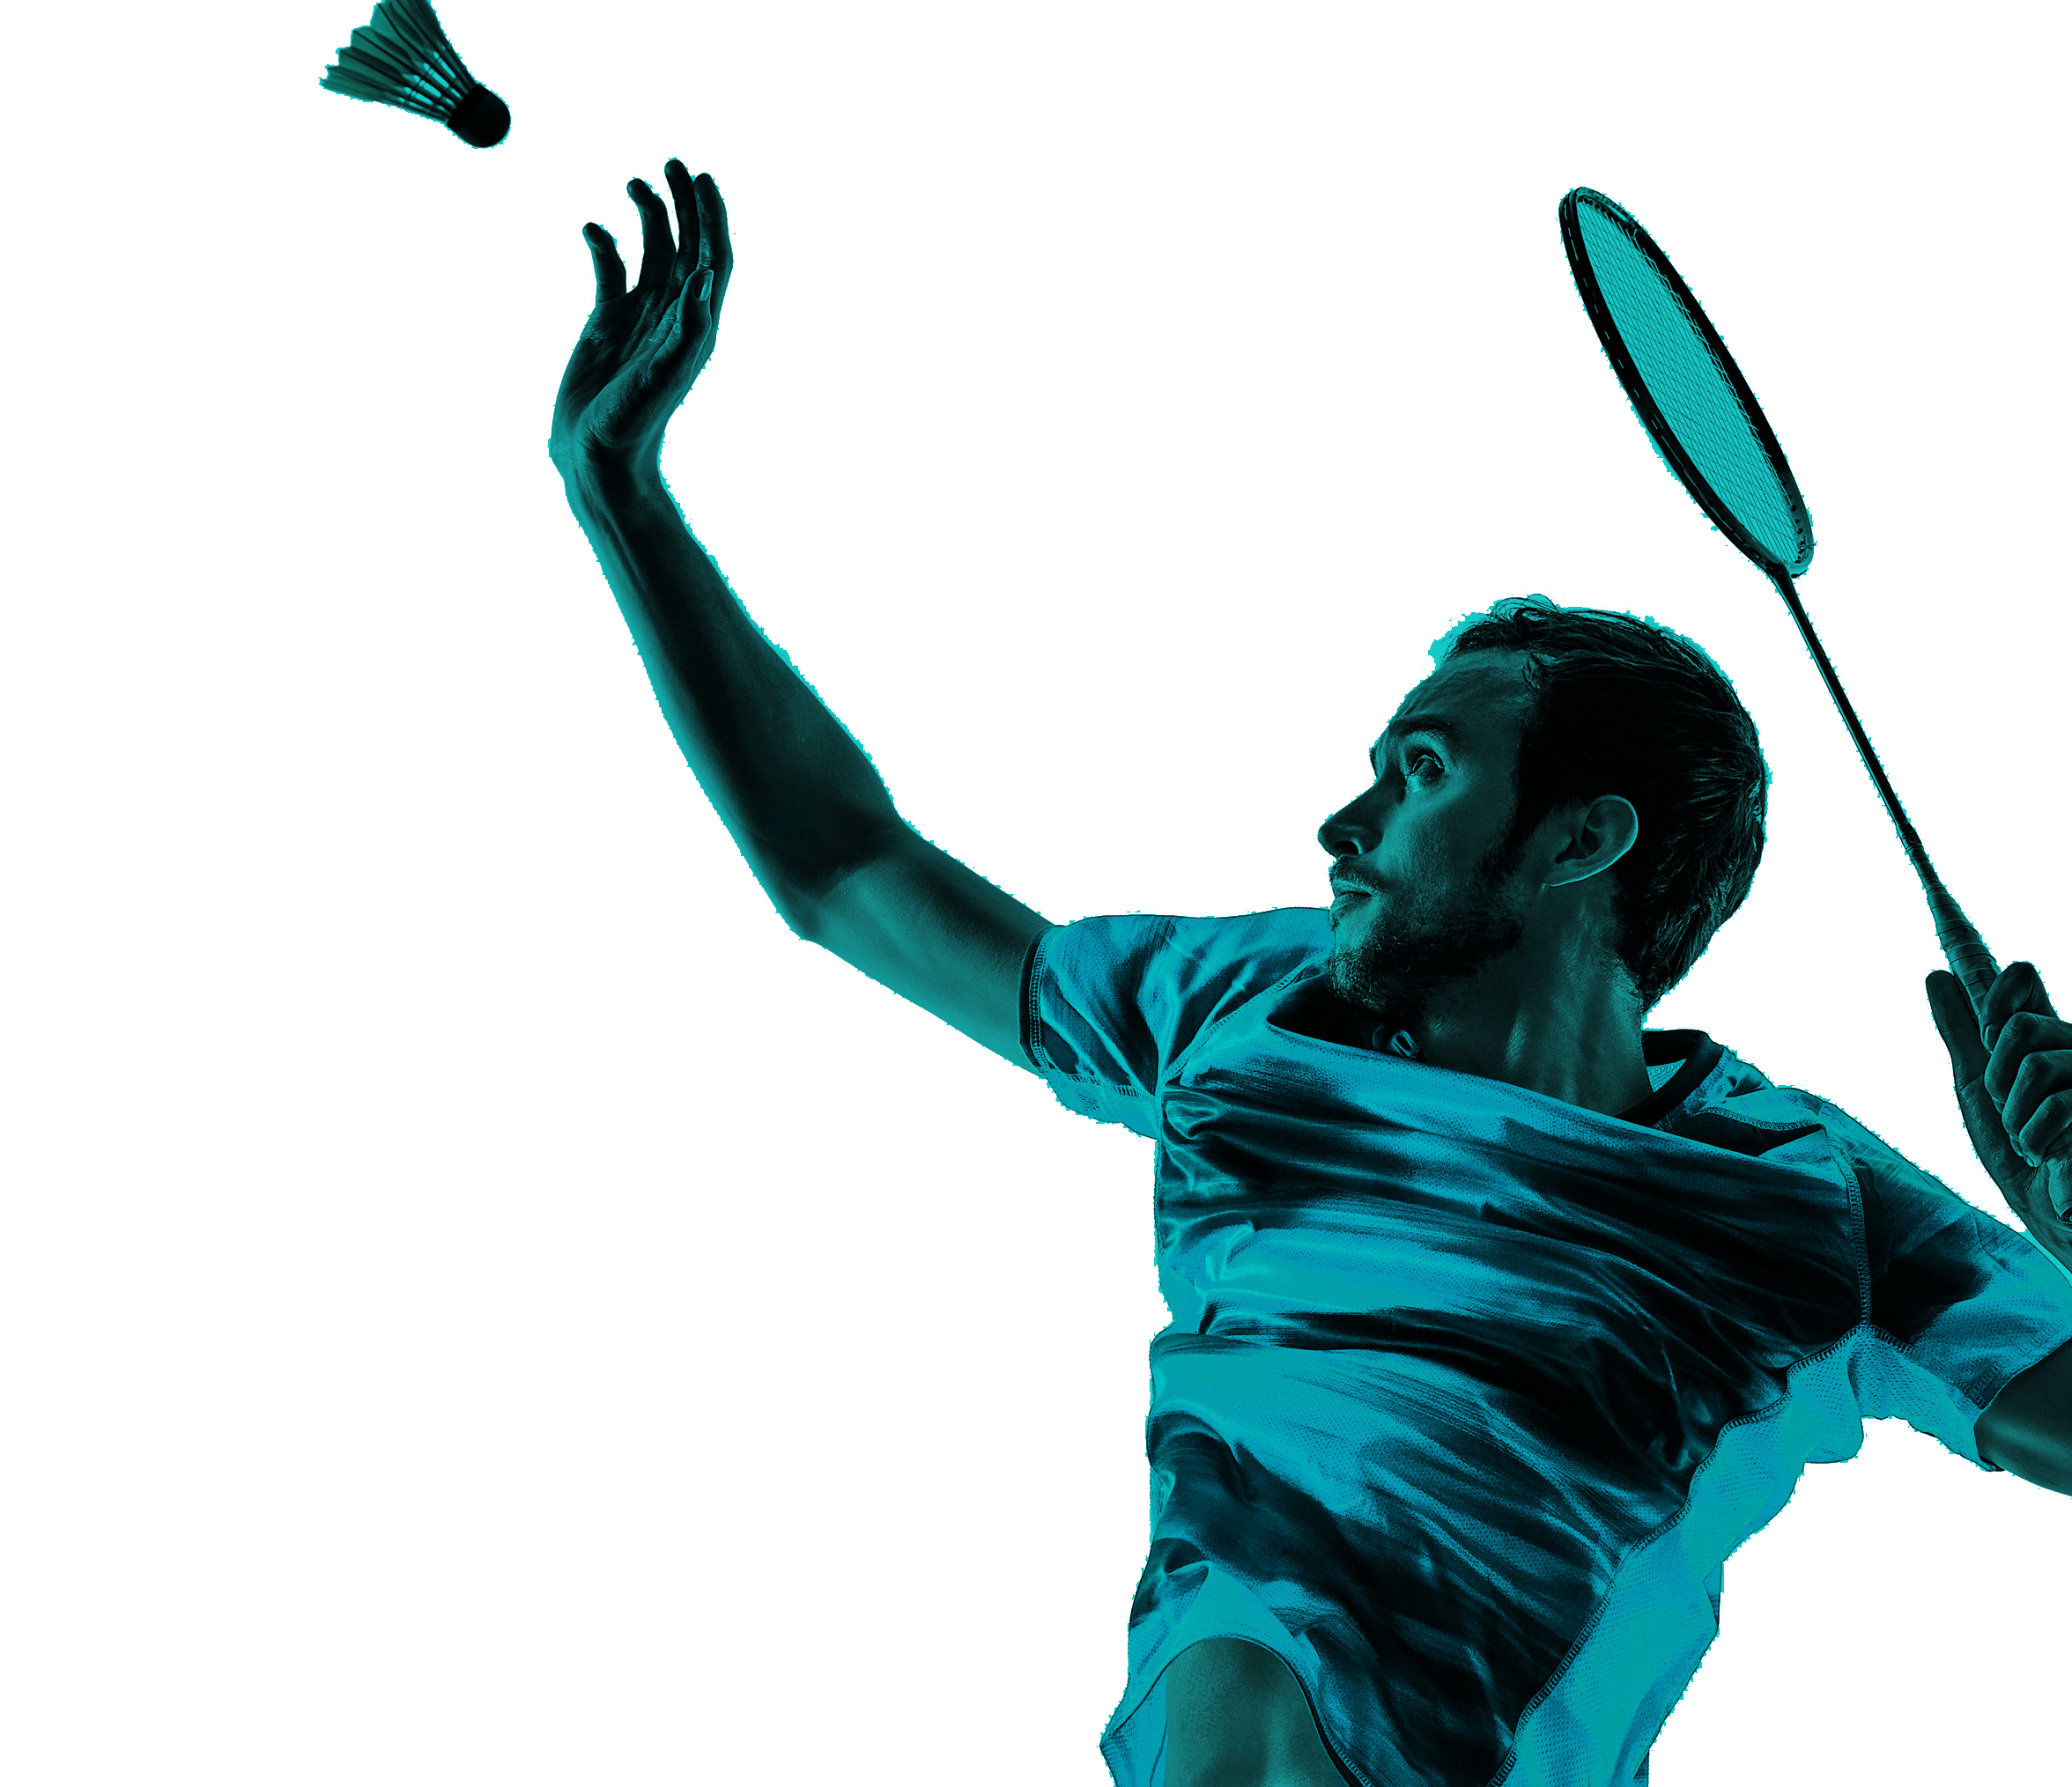 En la foto de la esquina superior, un badmintonista sostiene una raqueta. Está en posición de golpear la plumilla, equipamiento de esta disciplina. 